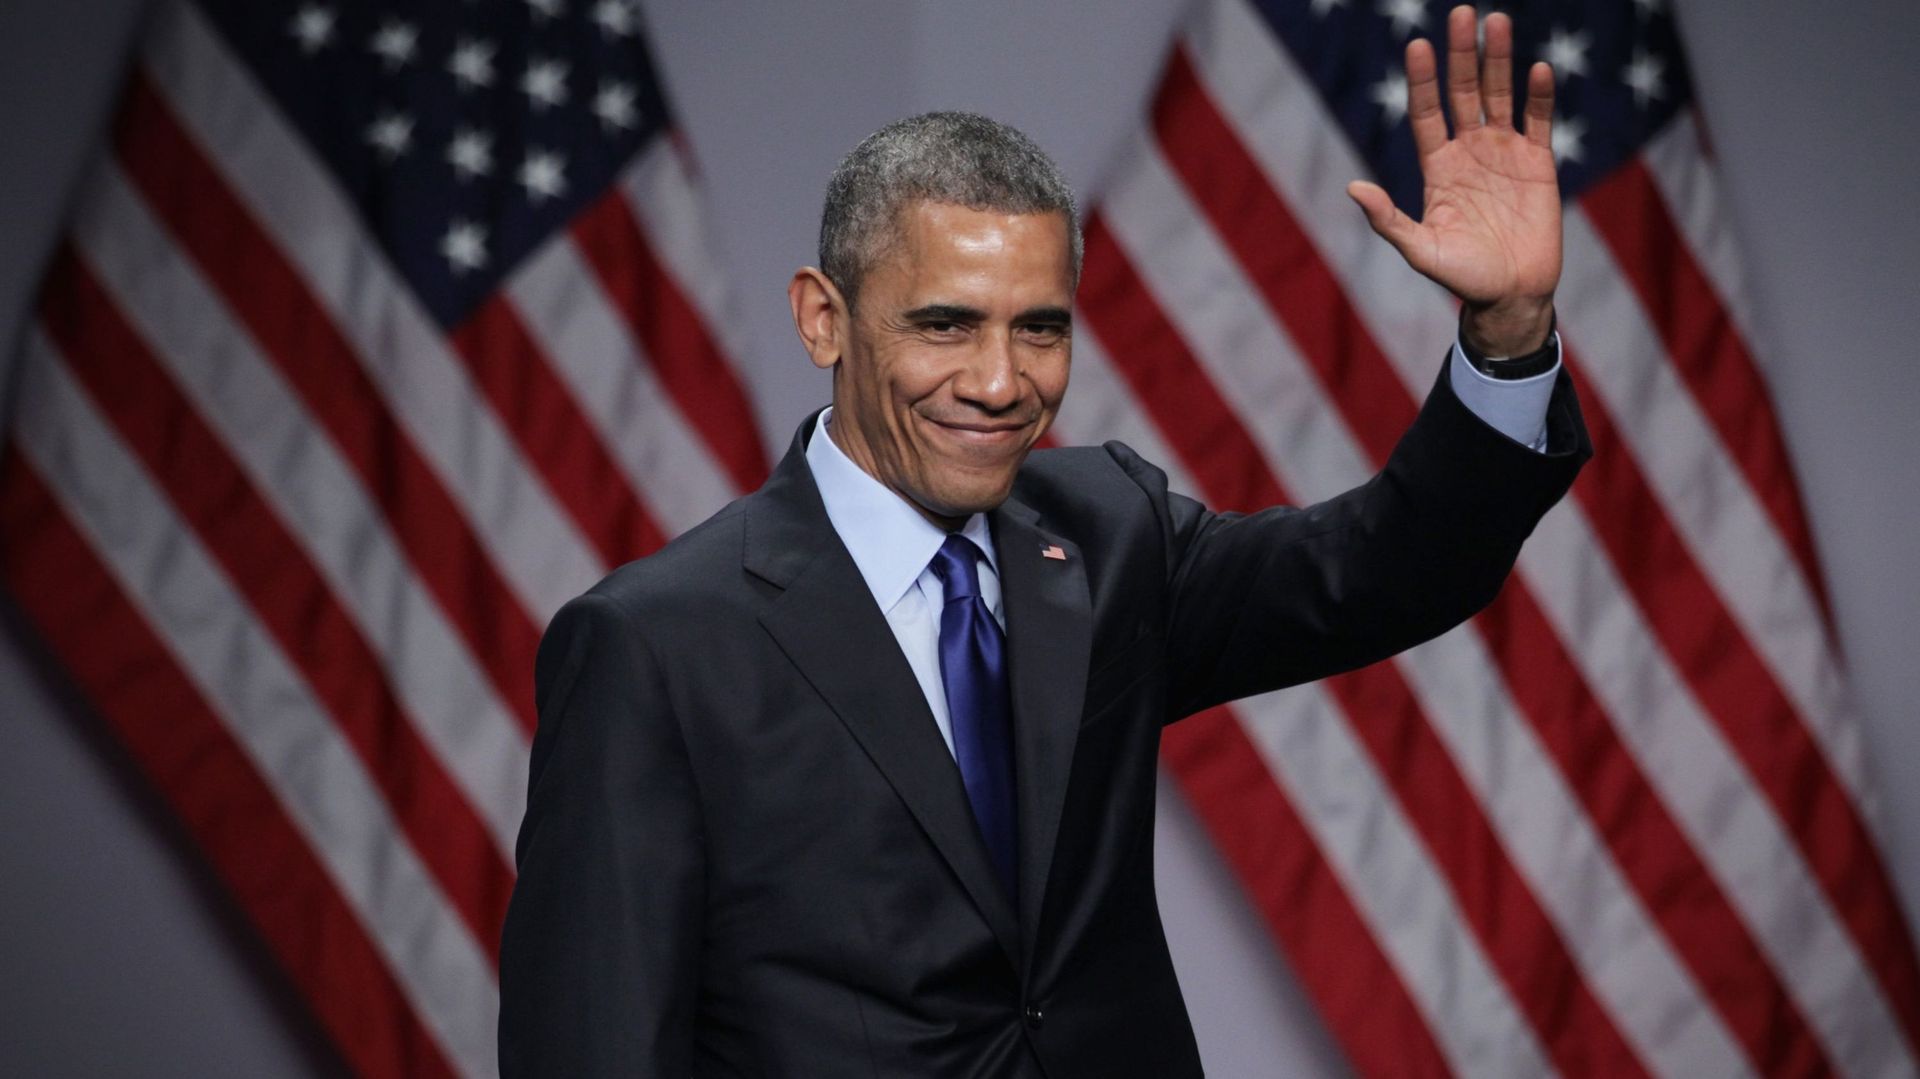 Barack Obama partage la bande son de la période où il était président